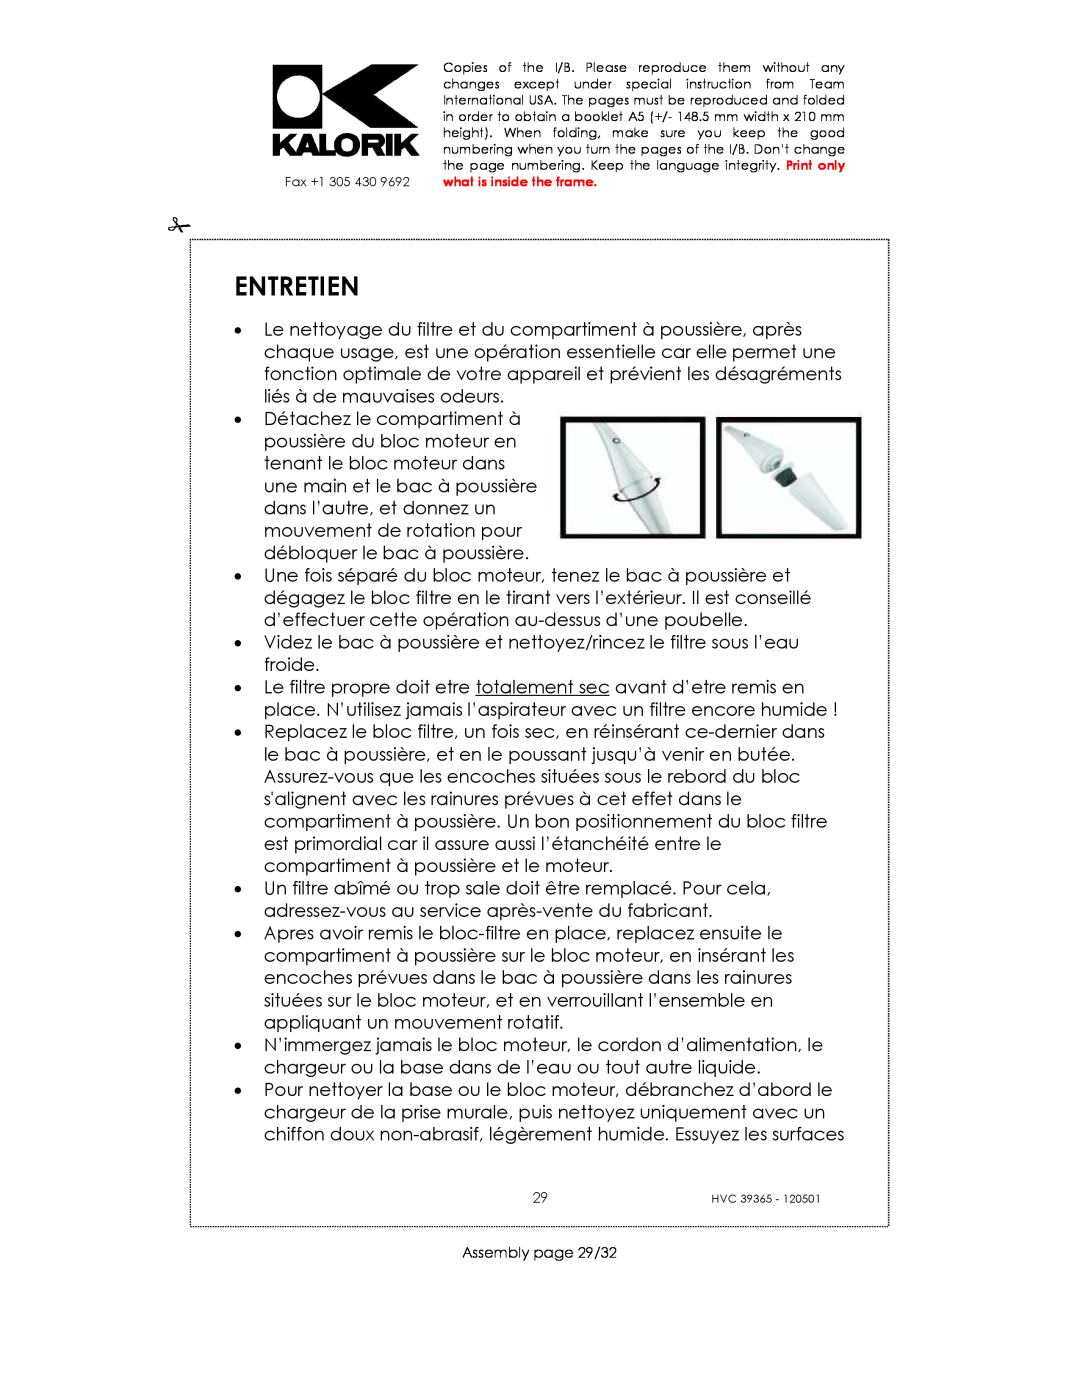 Kalorik HVC 39365 manual Entretien, Assembly page 29/32 